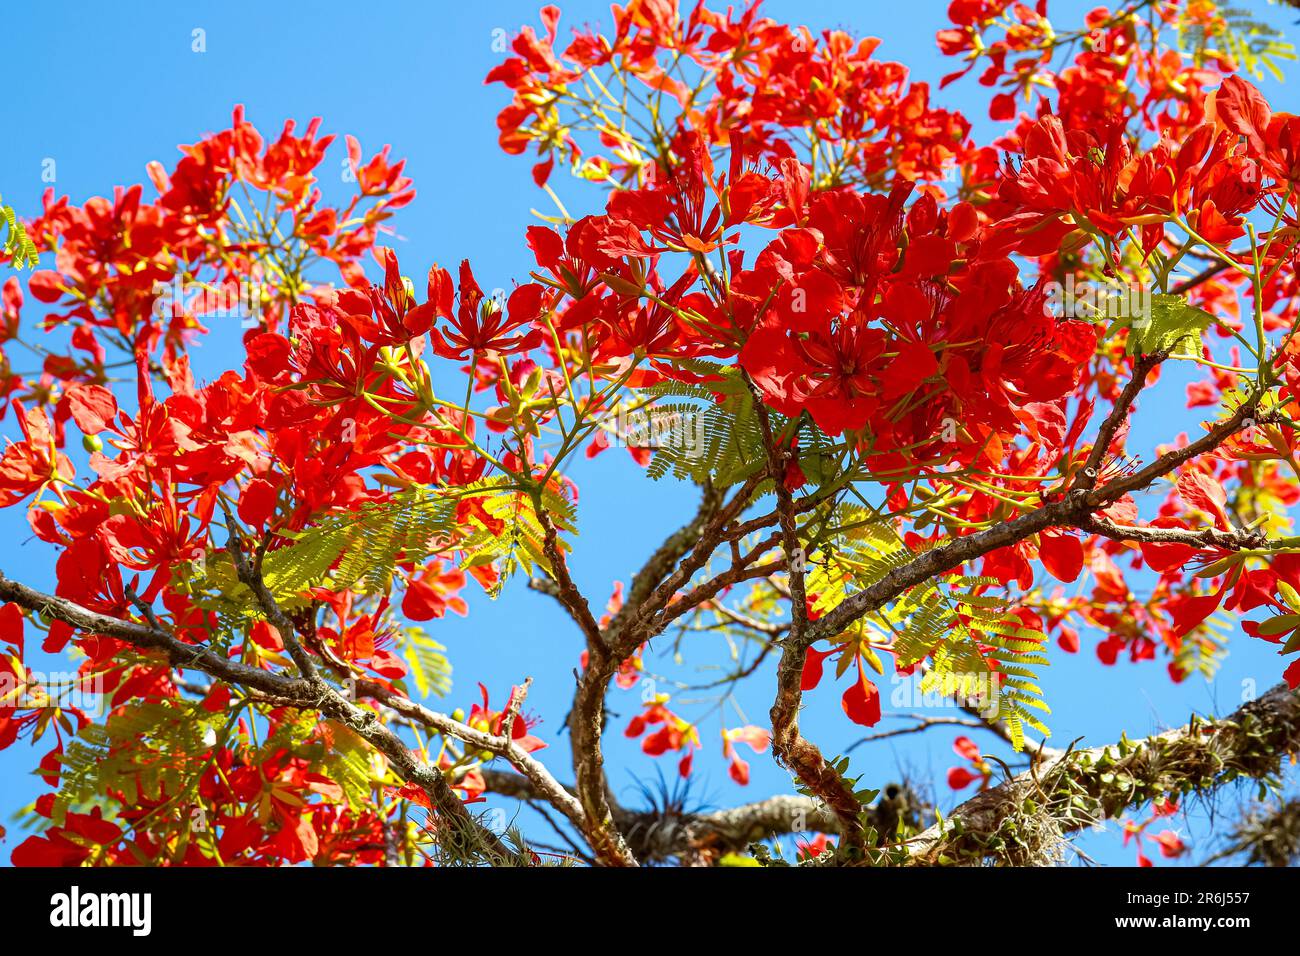 Splendidi fiori rossi di un albero contro il cielo blu nella città storica di Paraty, Brasile, patrimonio dell'umanità dell'UNESCO Foto Stock